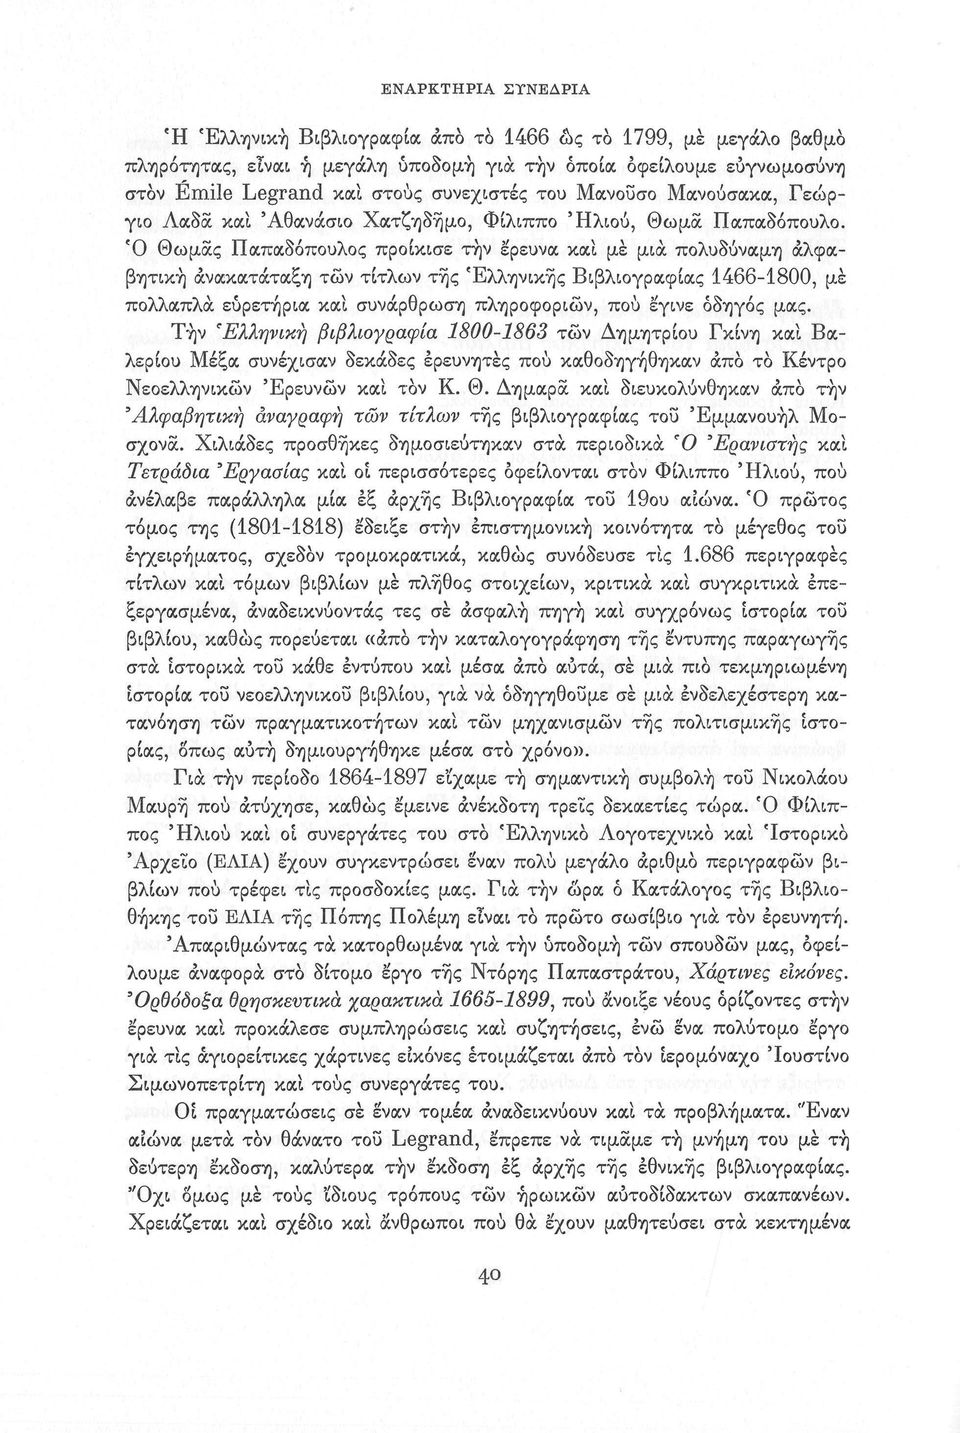 Ό Θωμας Παπαδόπουλος προίκισε τήν έρευνα και με μια πολυδύναμη αλφαβητική ανακατάταξη τών τίτλων της Ελληνικής Βιβλιογραφίας 1466-1800, με πολλαπλά ευρετήρια και συνάρθρωση πληροφοριών, πού έγινε